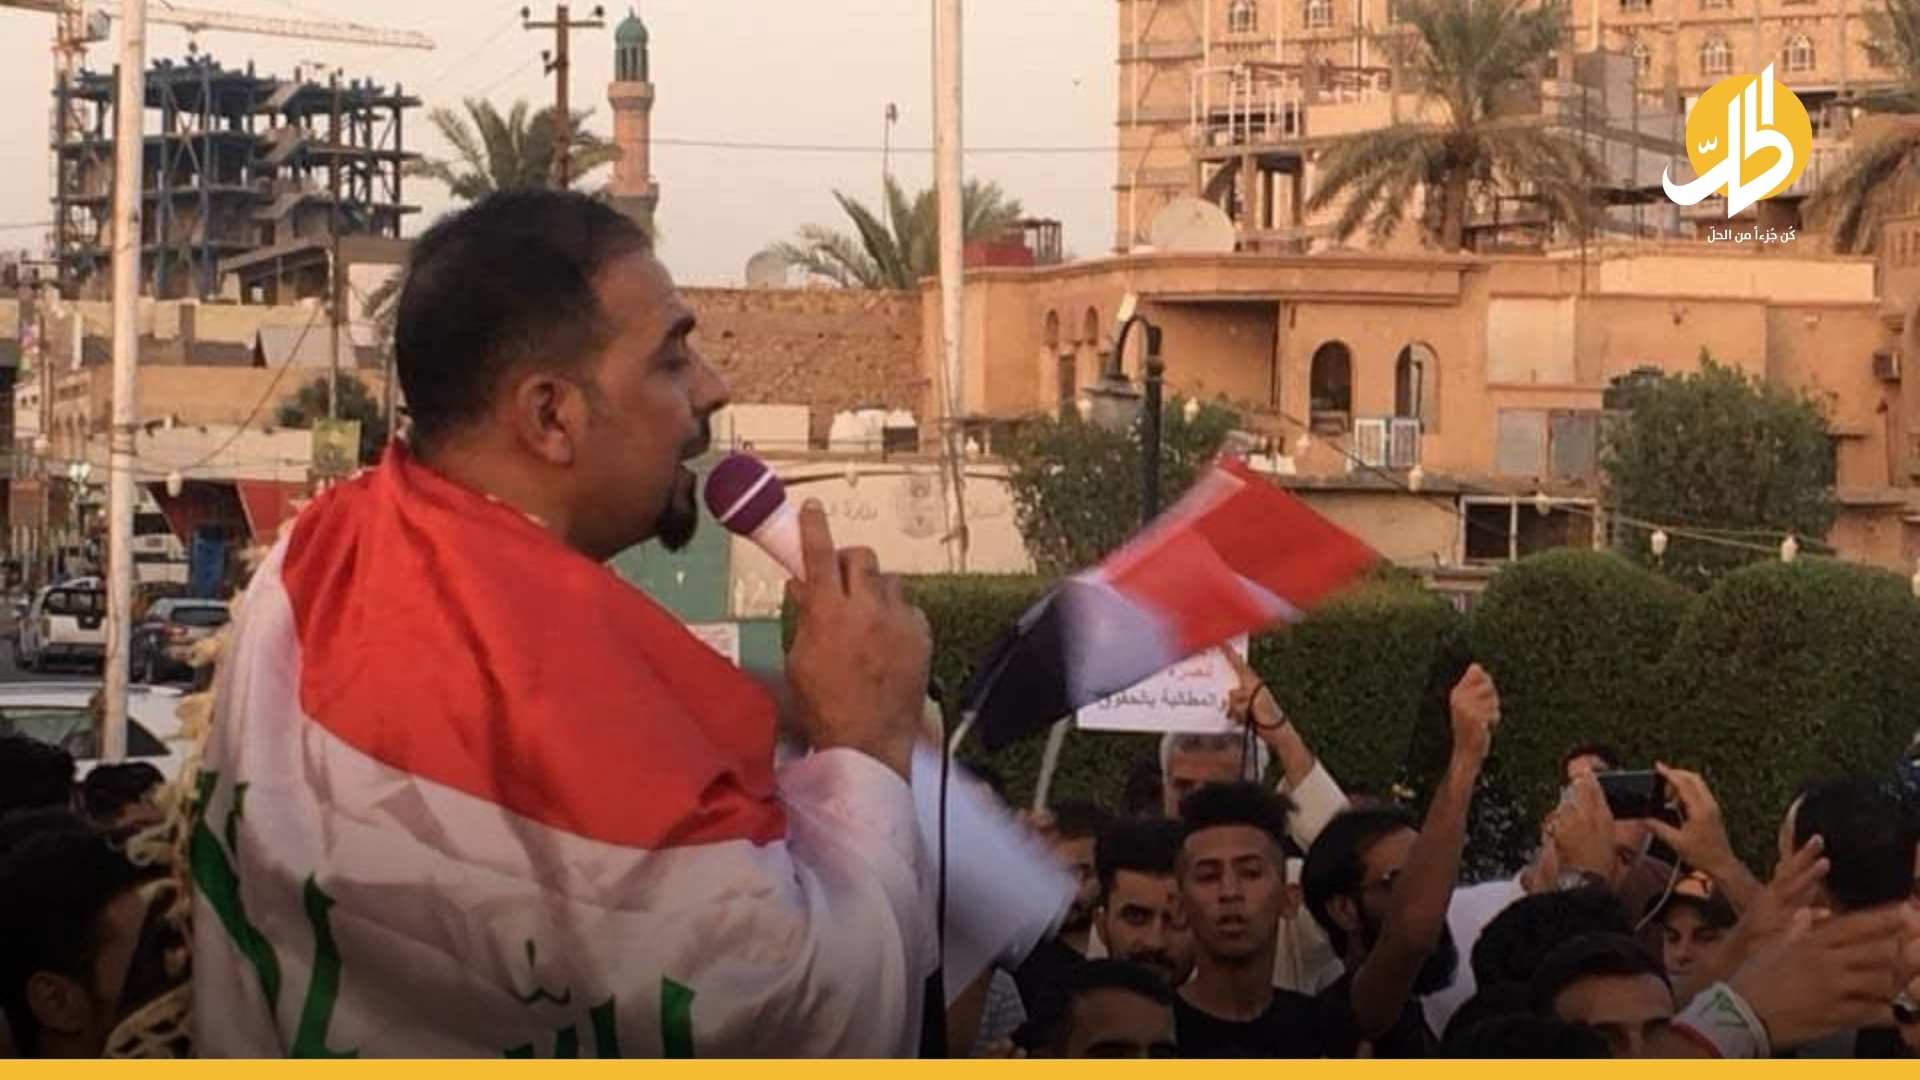 عائلة “الوزني” تُطالب بإقالة محافظ كربلاء وتمهل الحكومة حتى نهاية العيد (فيديو)